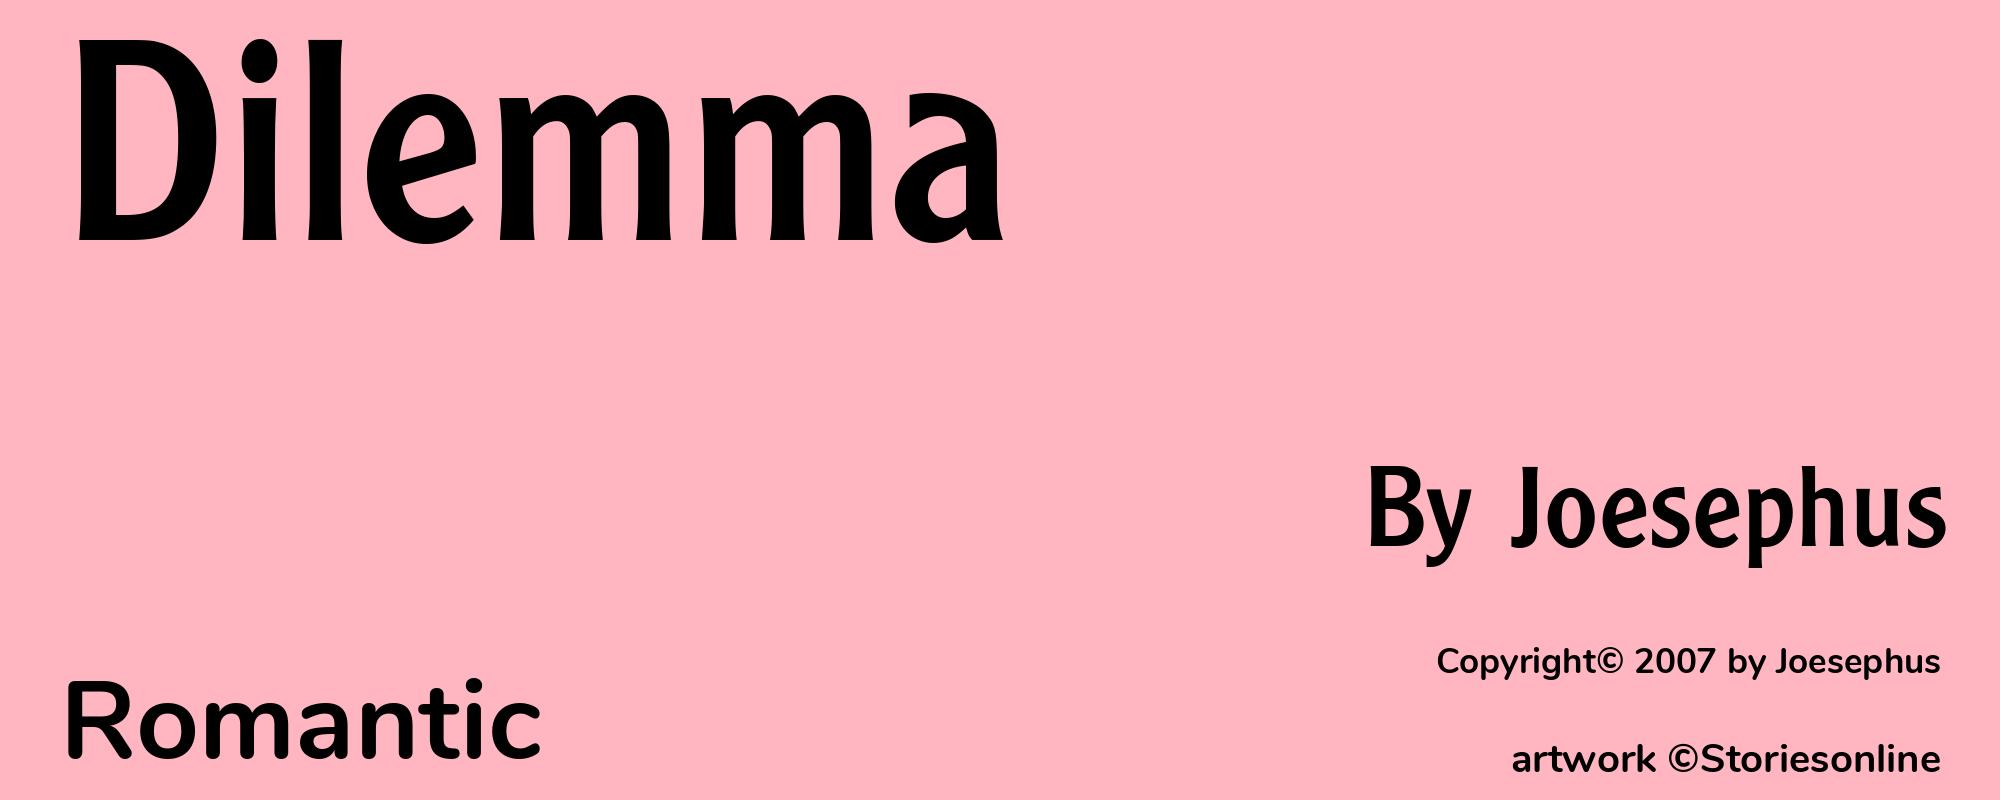 Dilemma - Cover